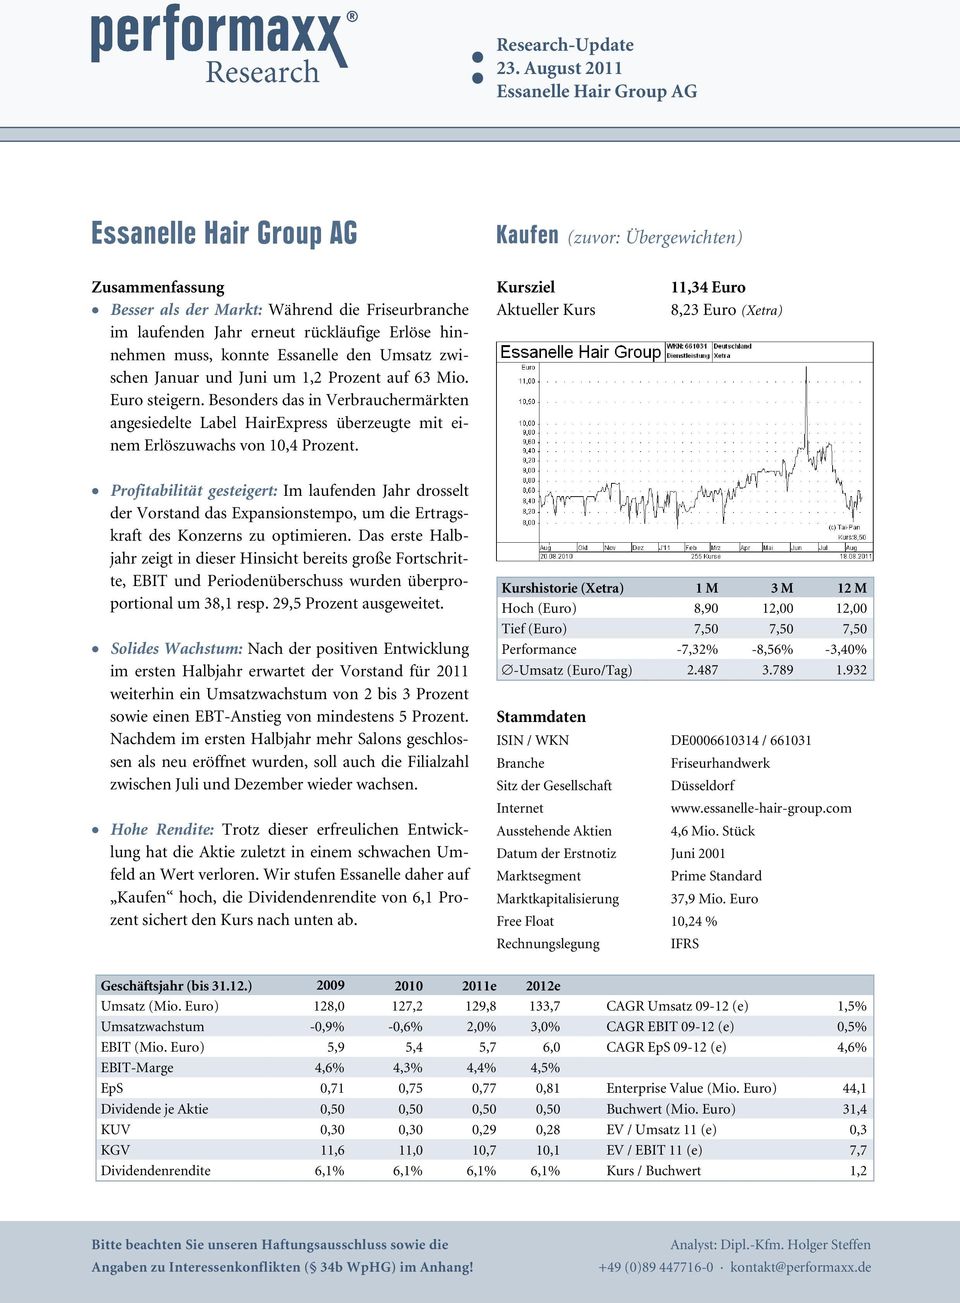 hinnehmen muss, konnte Essanelle den Umsatz zwischen Januar und Juni um 1,2 Prozent auf 63 Mio. Euro steigern.